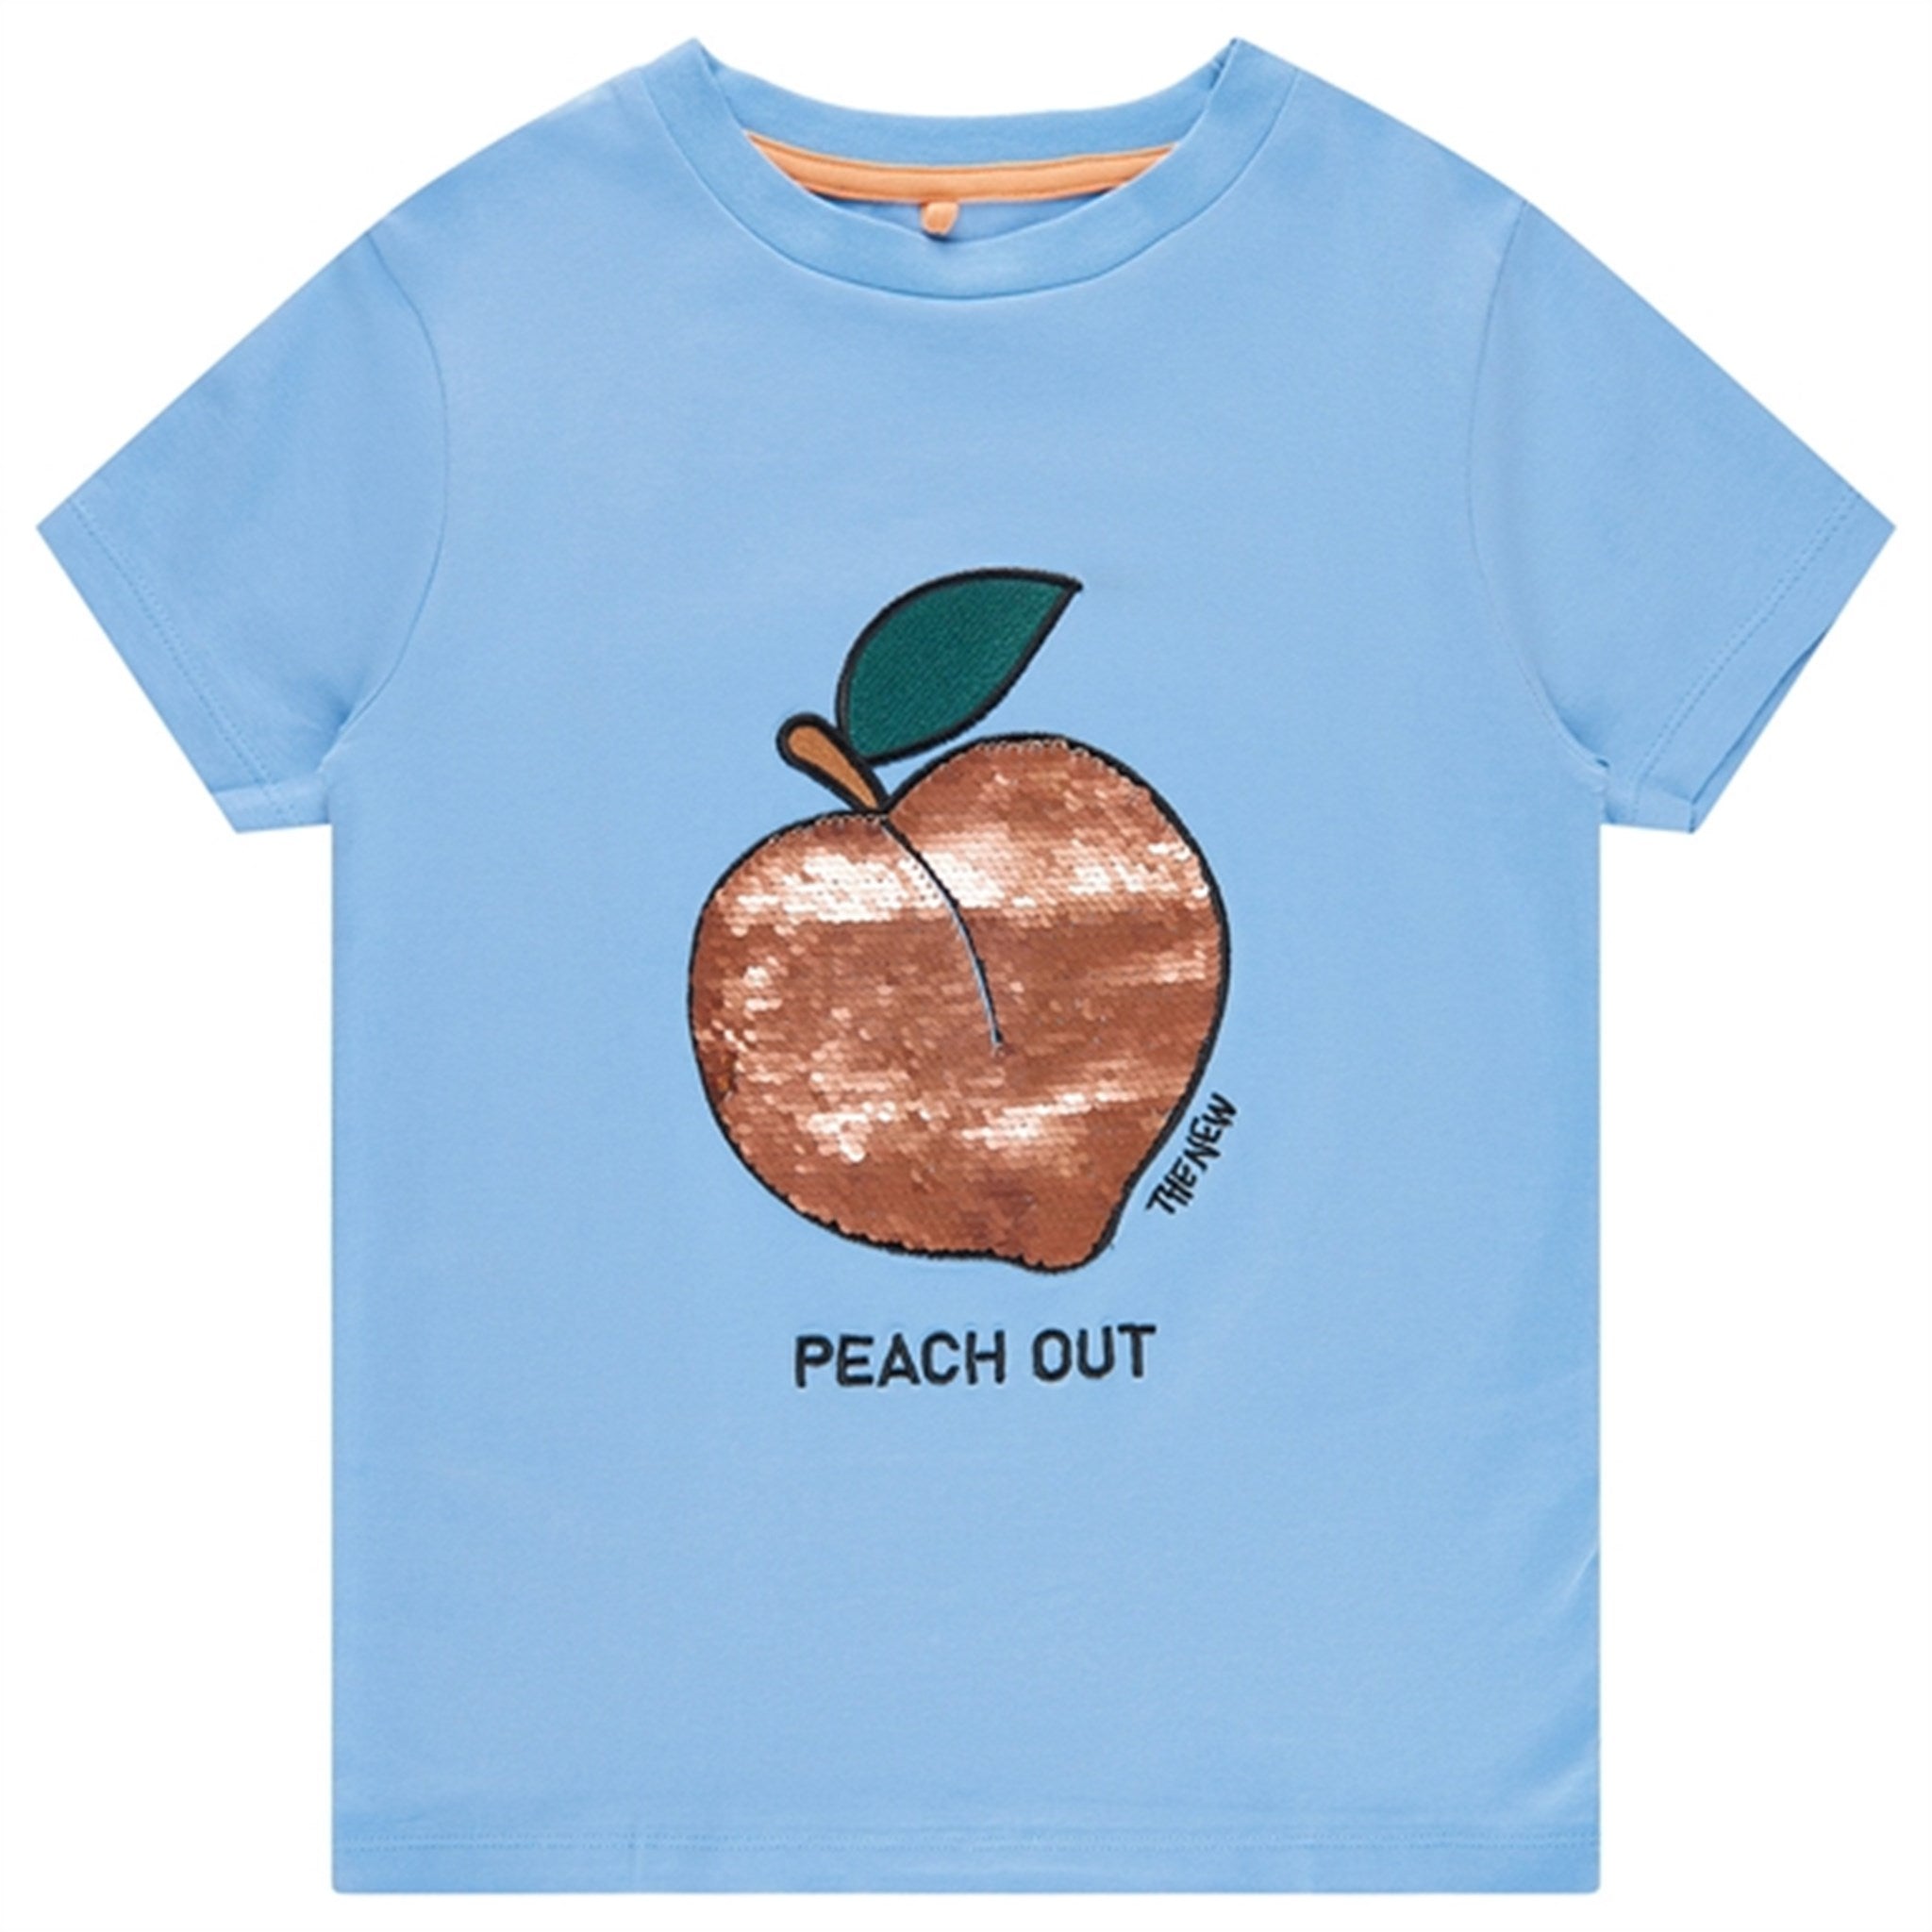 THE NEW Bel Air Blue Feach T-shirt